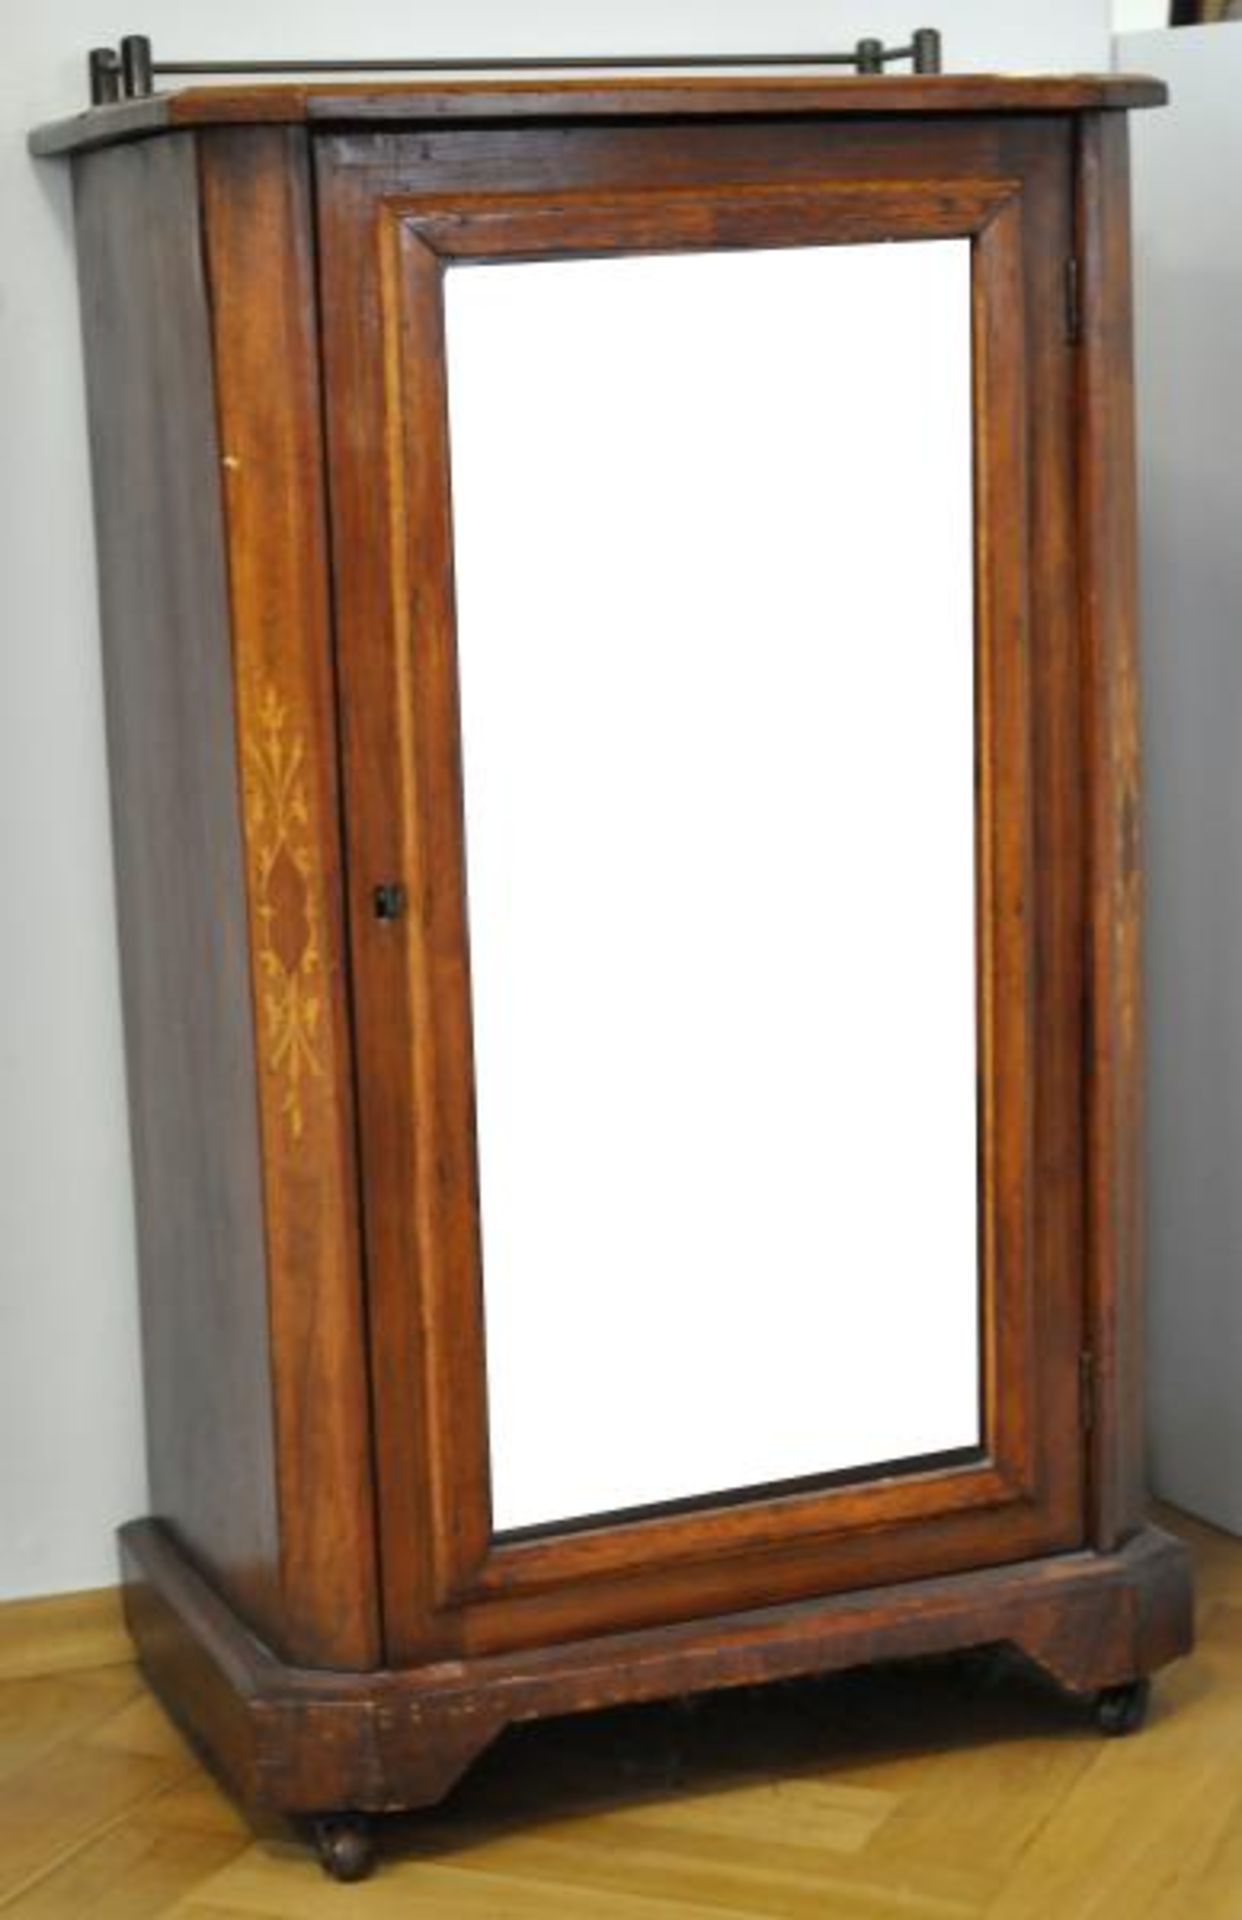 KLEINE VITRINE Türe mit Glasfenster auf der Vorderseite, geschrägte Ecken und Abschlußplatte mit - Bild 3 aus 3